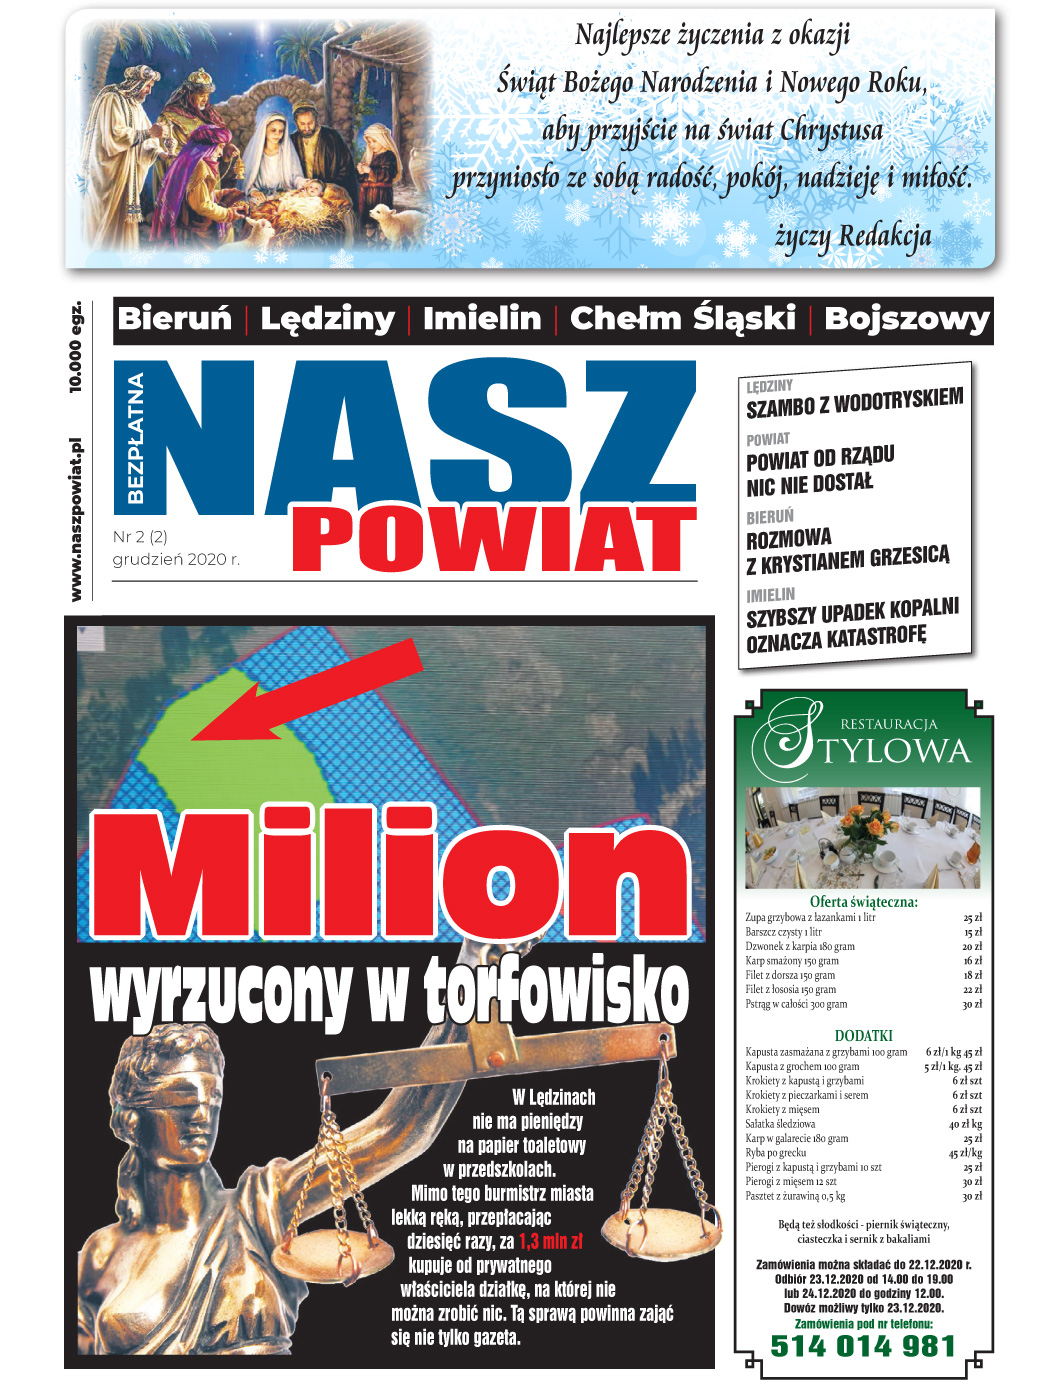 E-wydanie "Nasz Powiat" - grudzień 2020